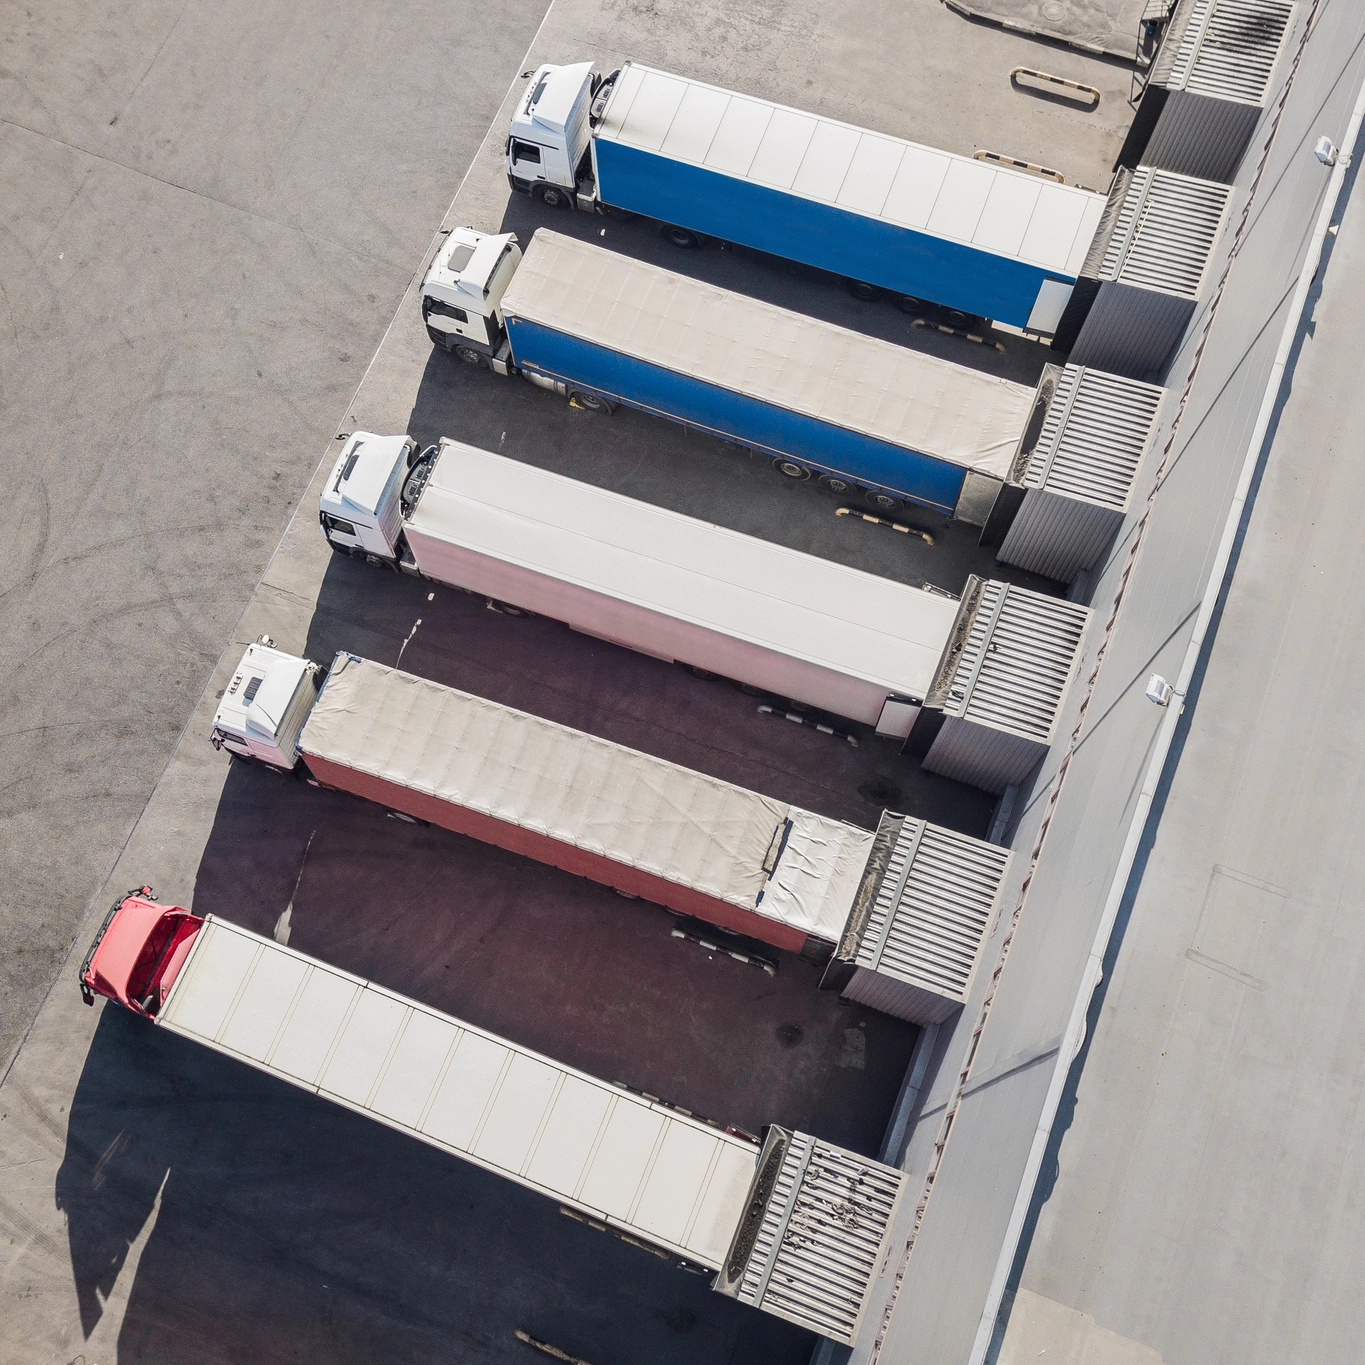 "Vue aérienne d'un centre logistique d'Innovia montrant une rangée de camions stationnés, soulignant l'efficacité et la capacité organisationnelle en matière de transport et de logistique.